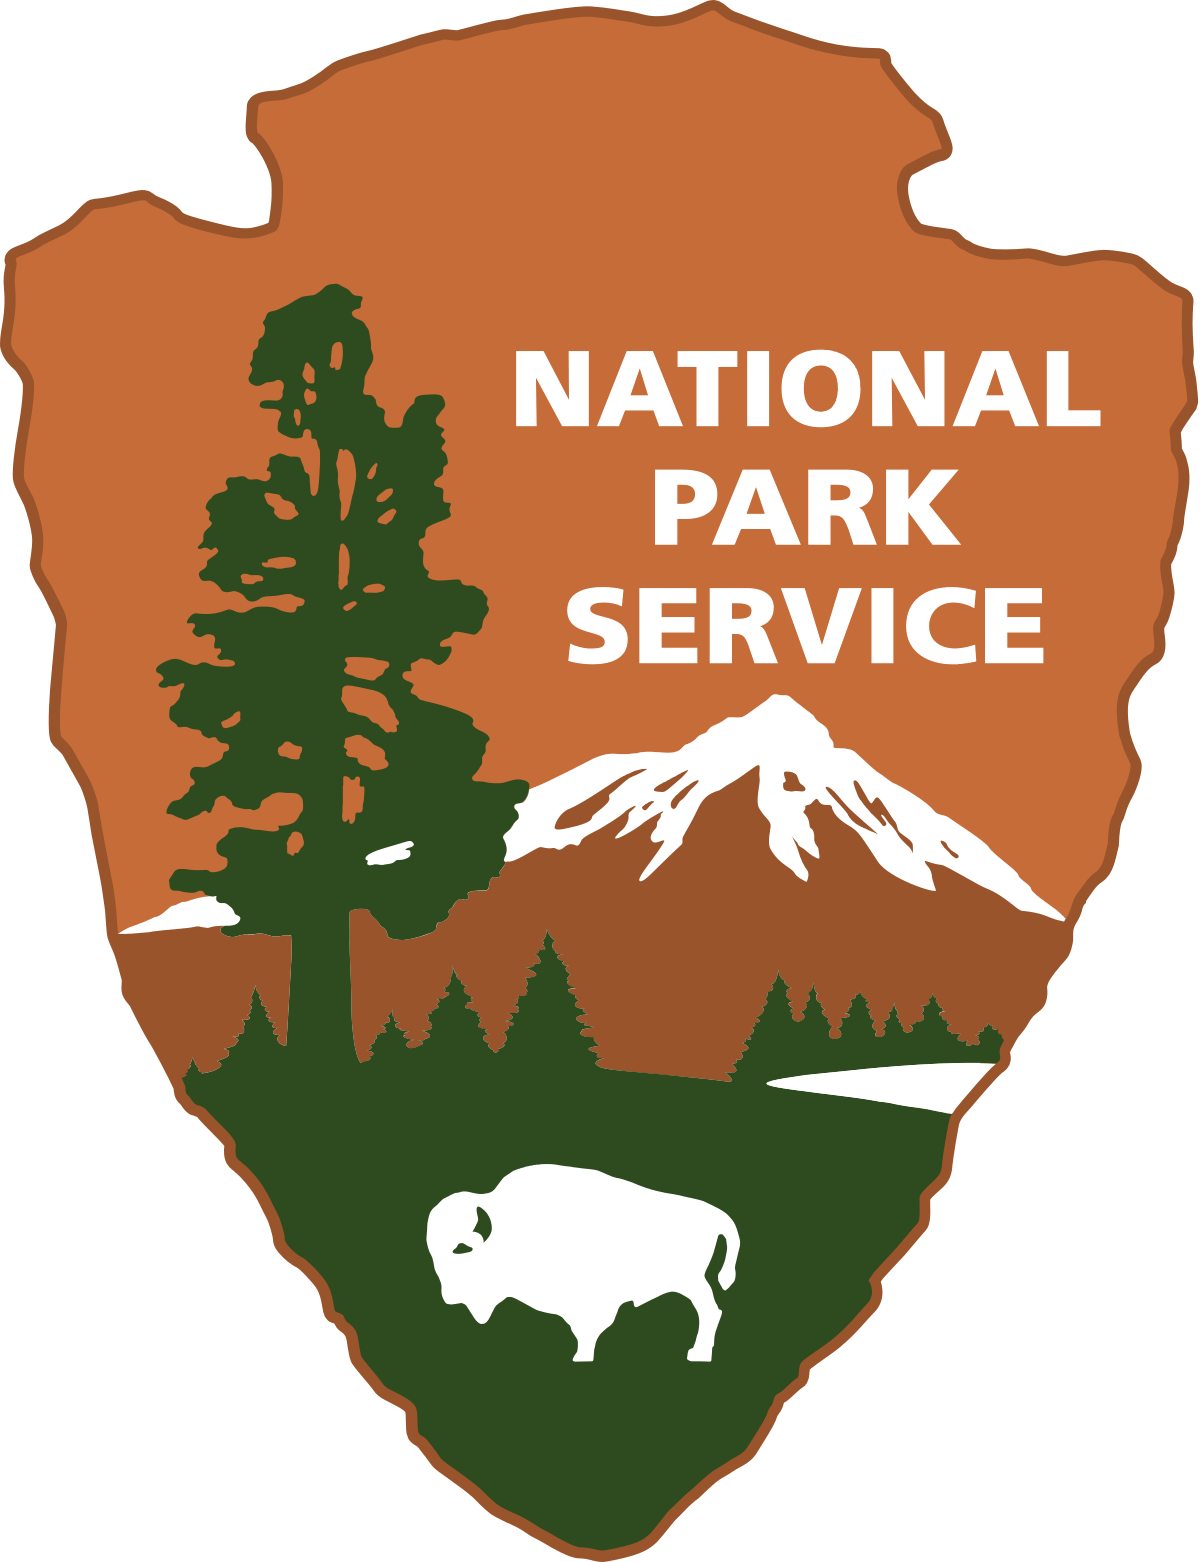 National Park Service – Home of Franklin D. Roosevelt